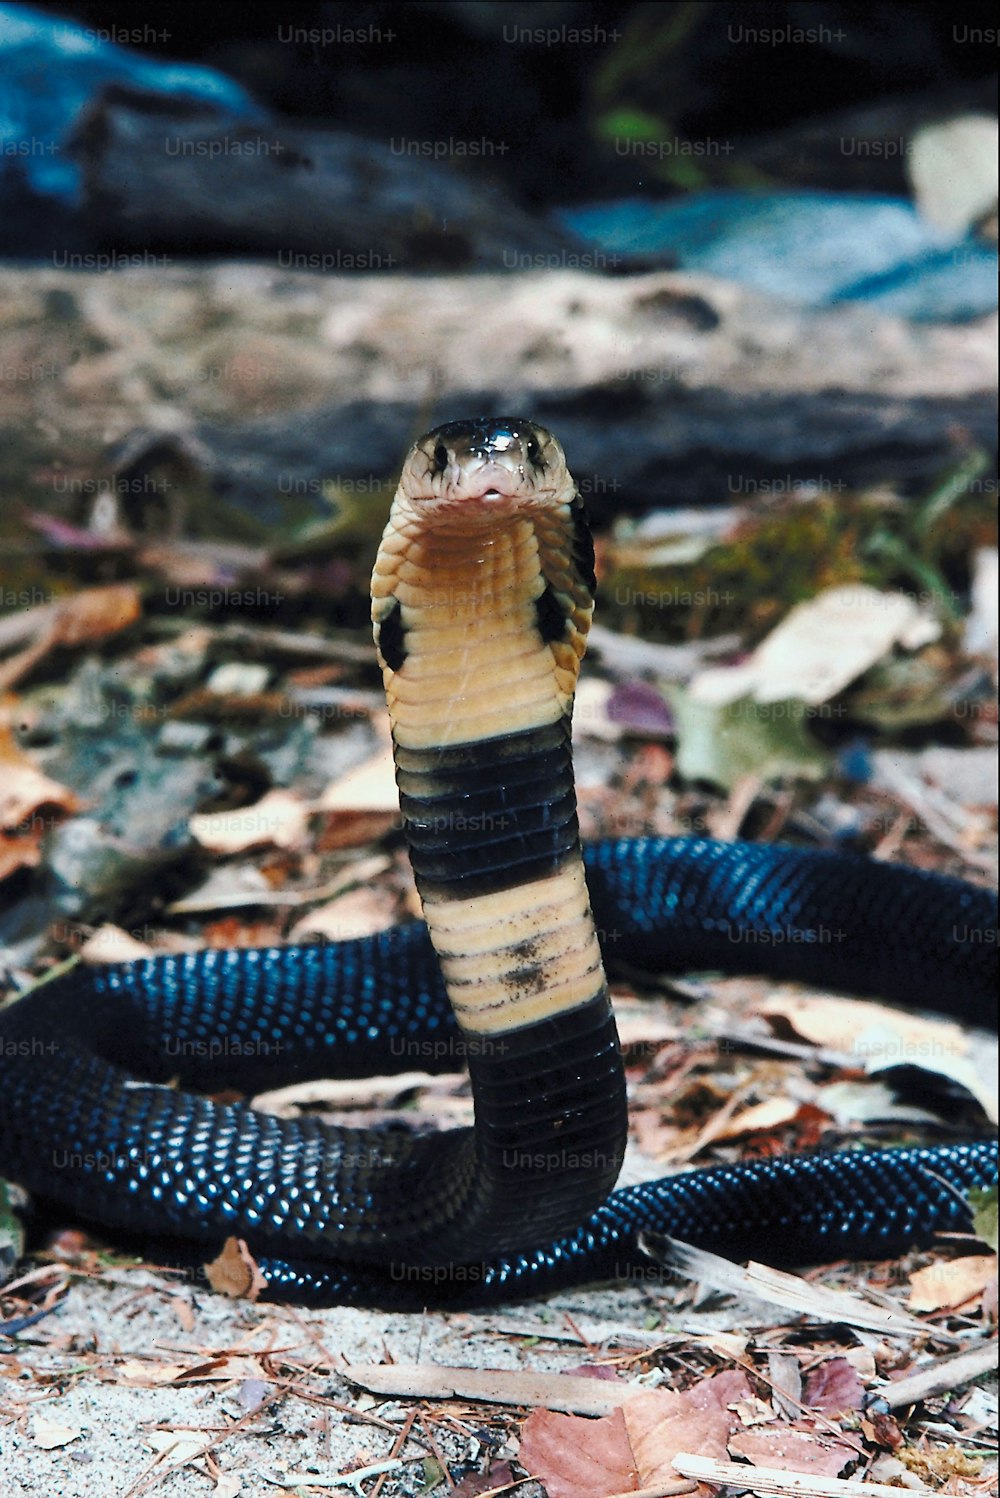 Una serpiente negra y marrón en el suelo